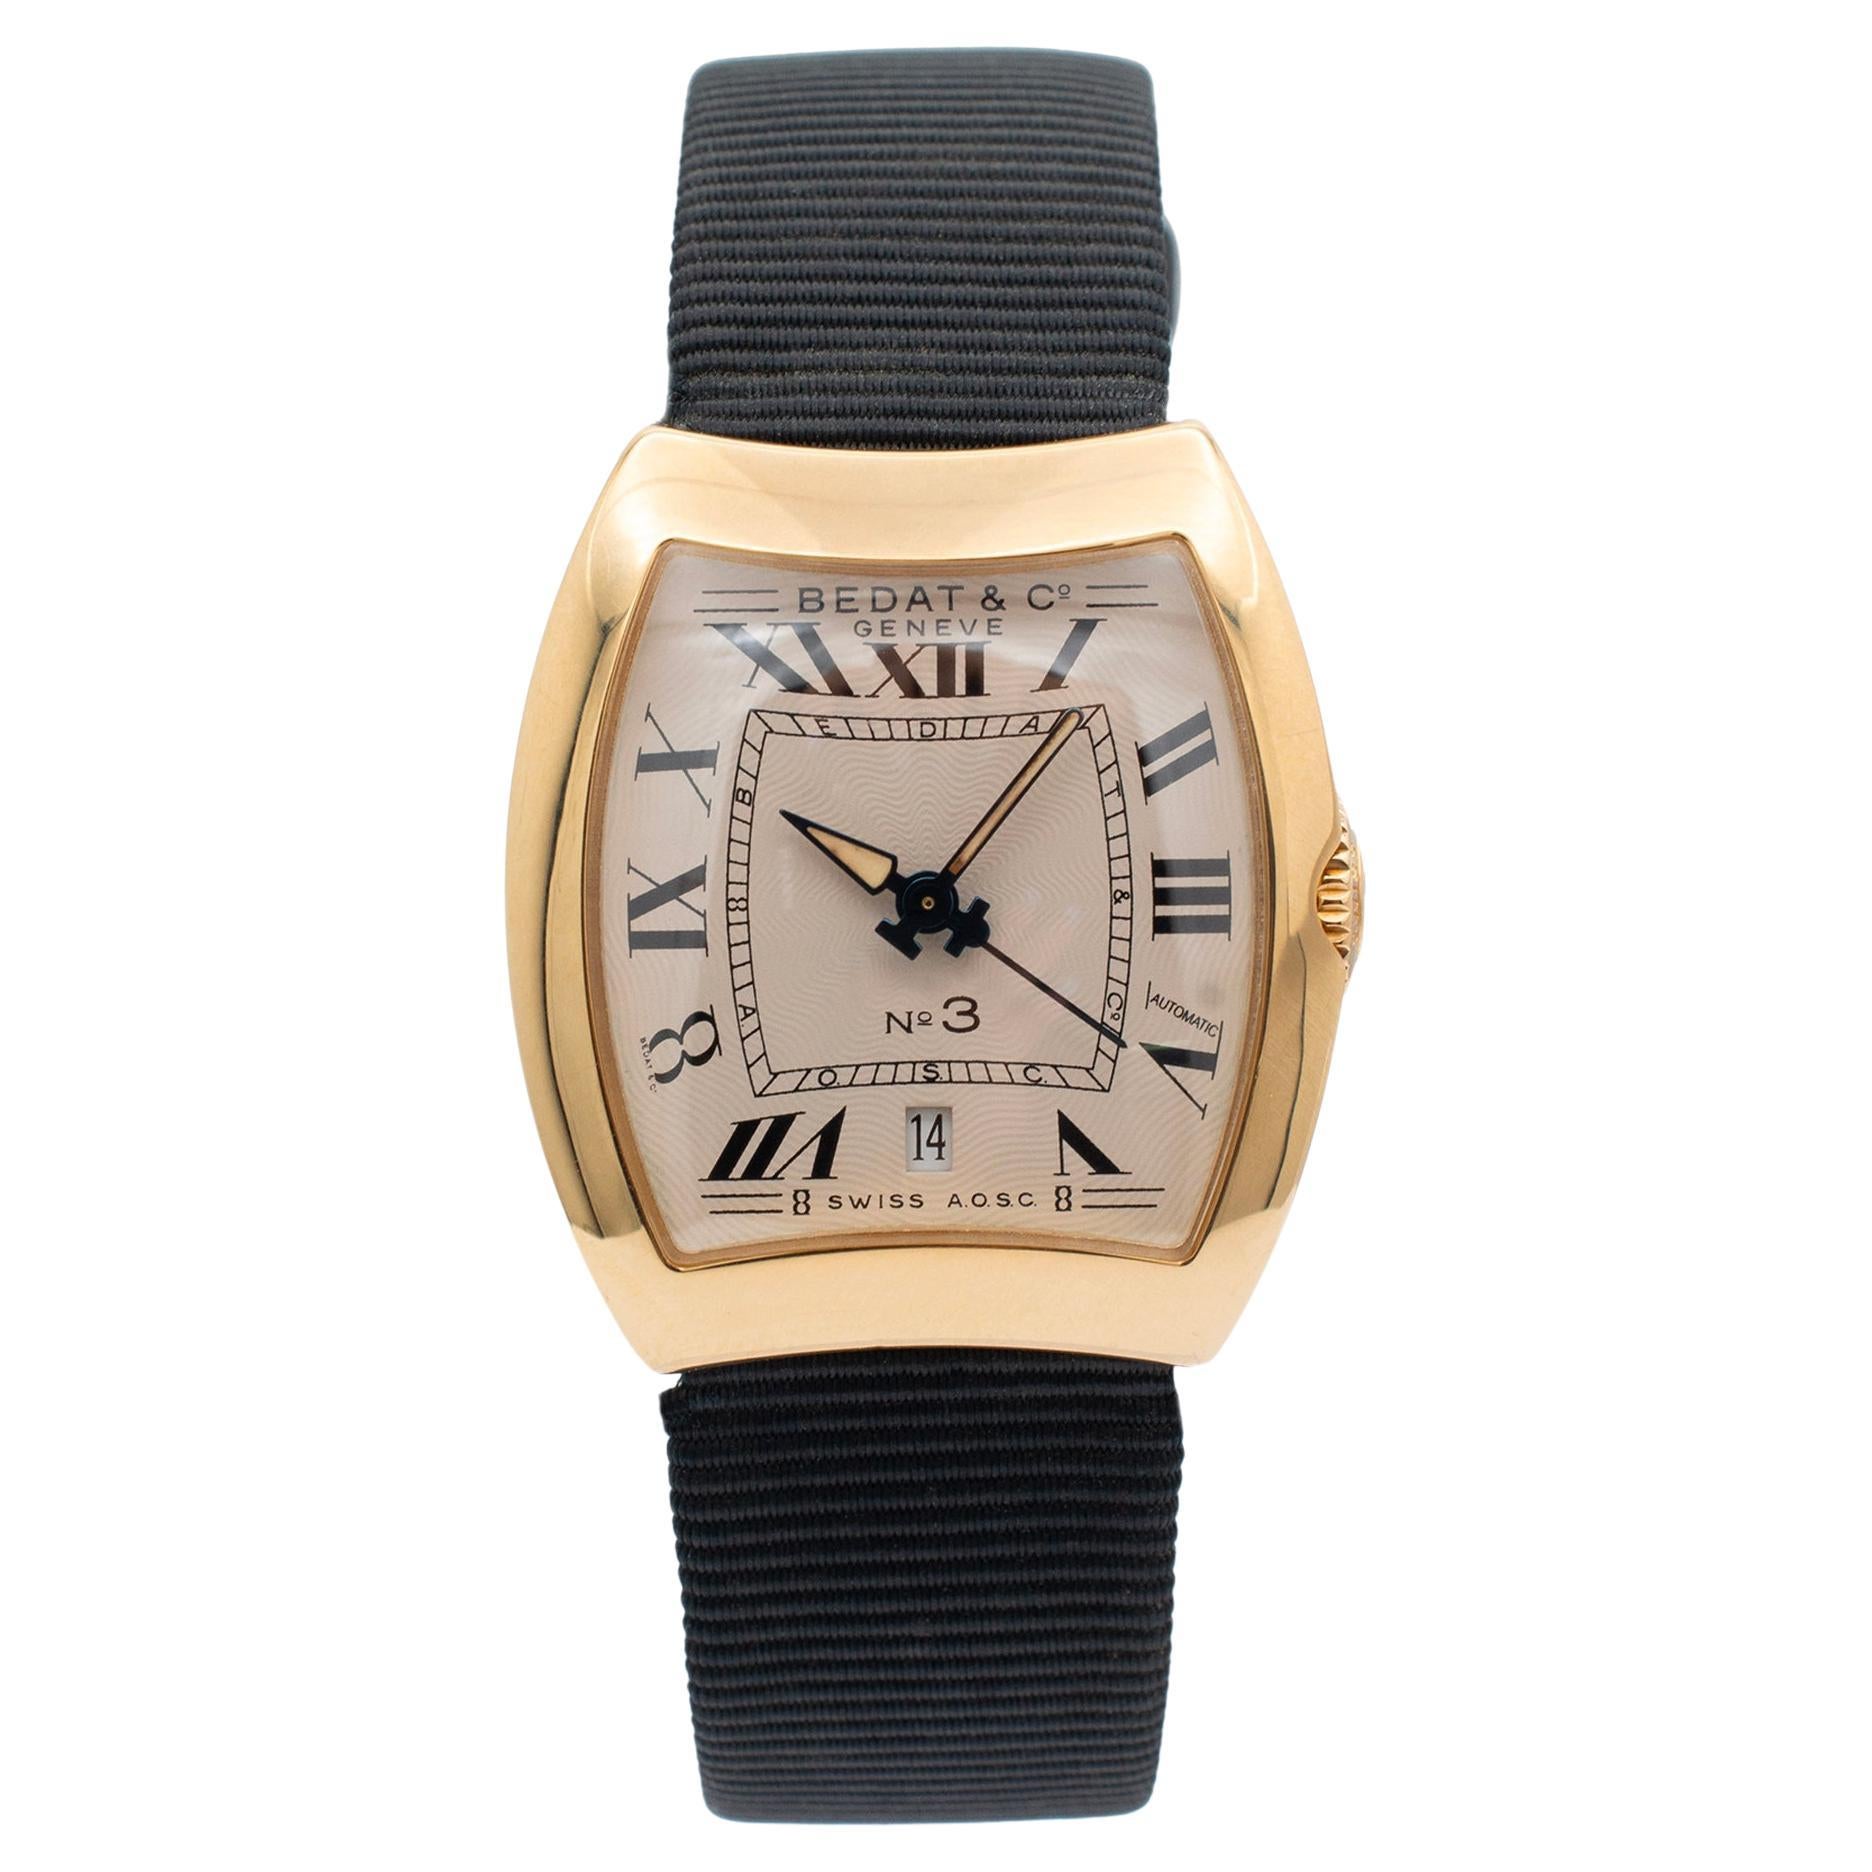 Bedat & Co. Reloj de señora Geneve N03 314 28MM en forma de tonel de oro amarillo de 18 quilates